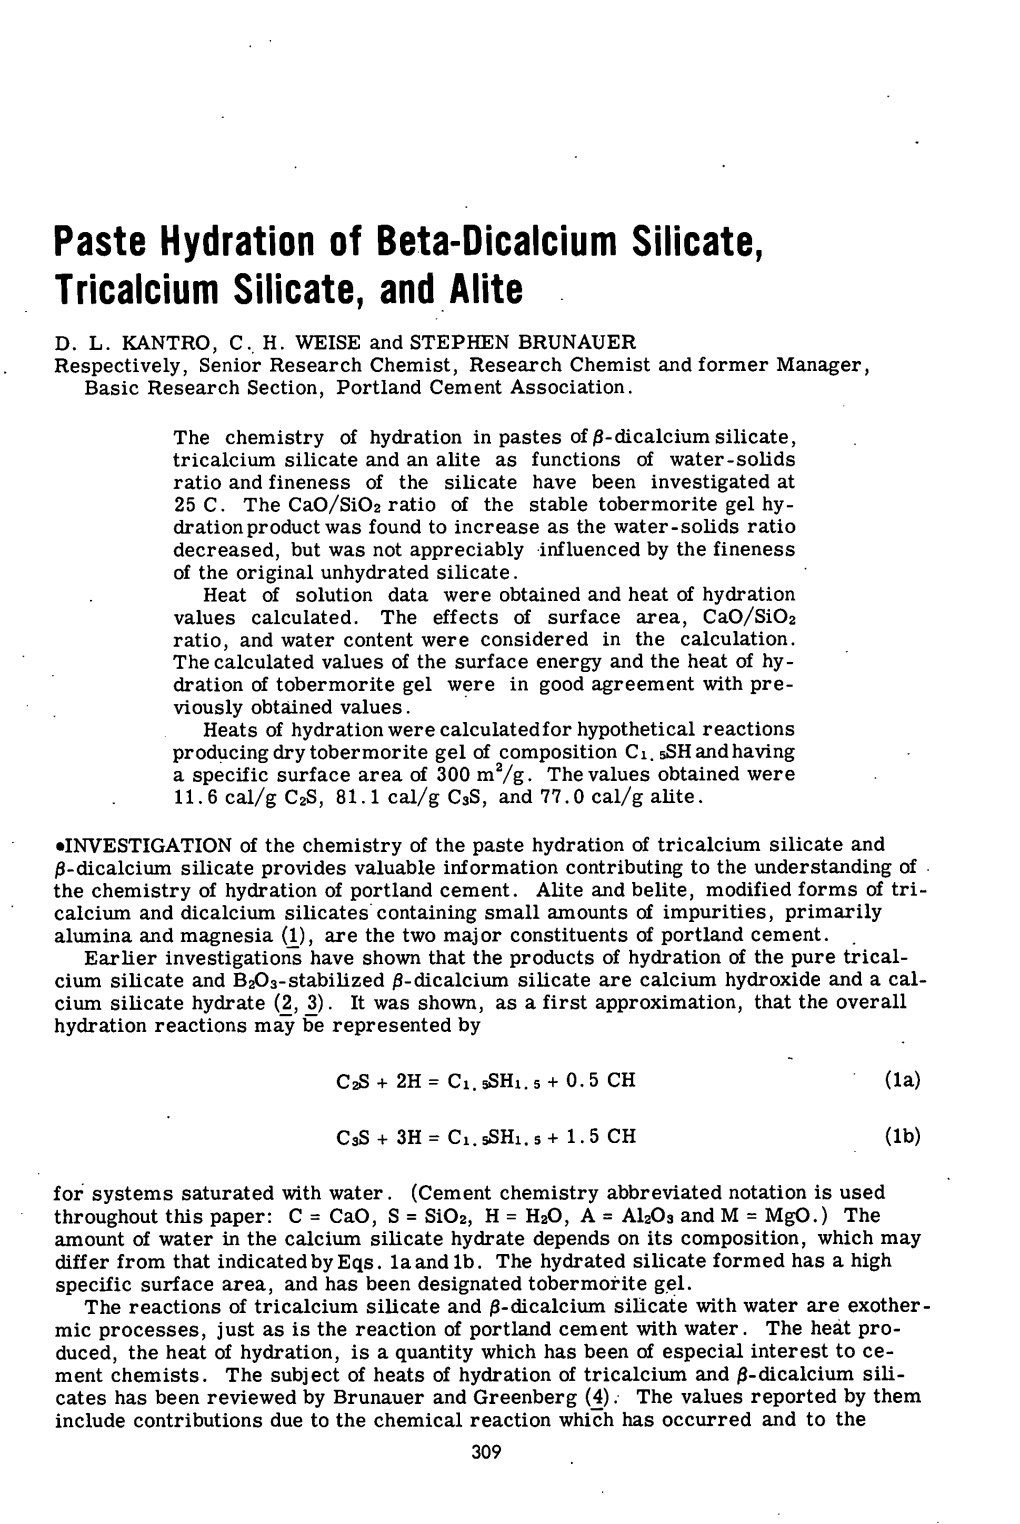 Paste Hydration of Beta-Dicalcium Silicate, Tricalcium Silicate, and Alite